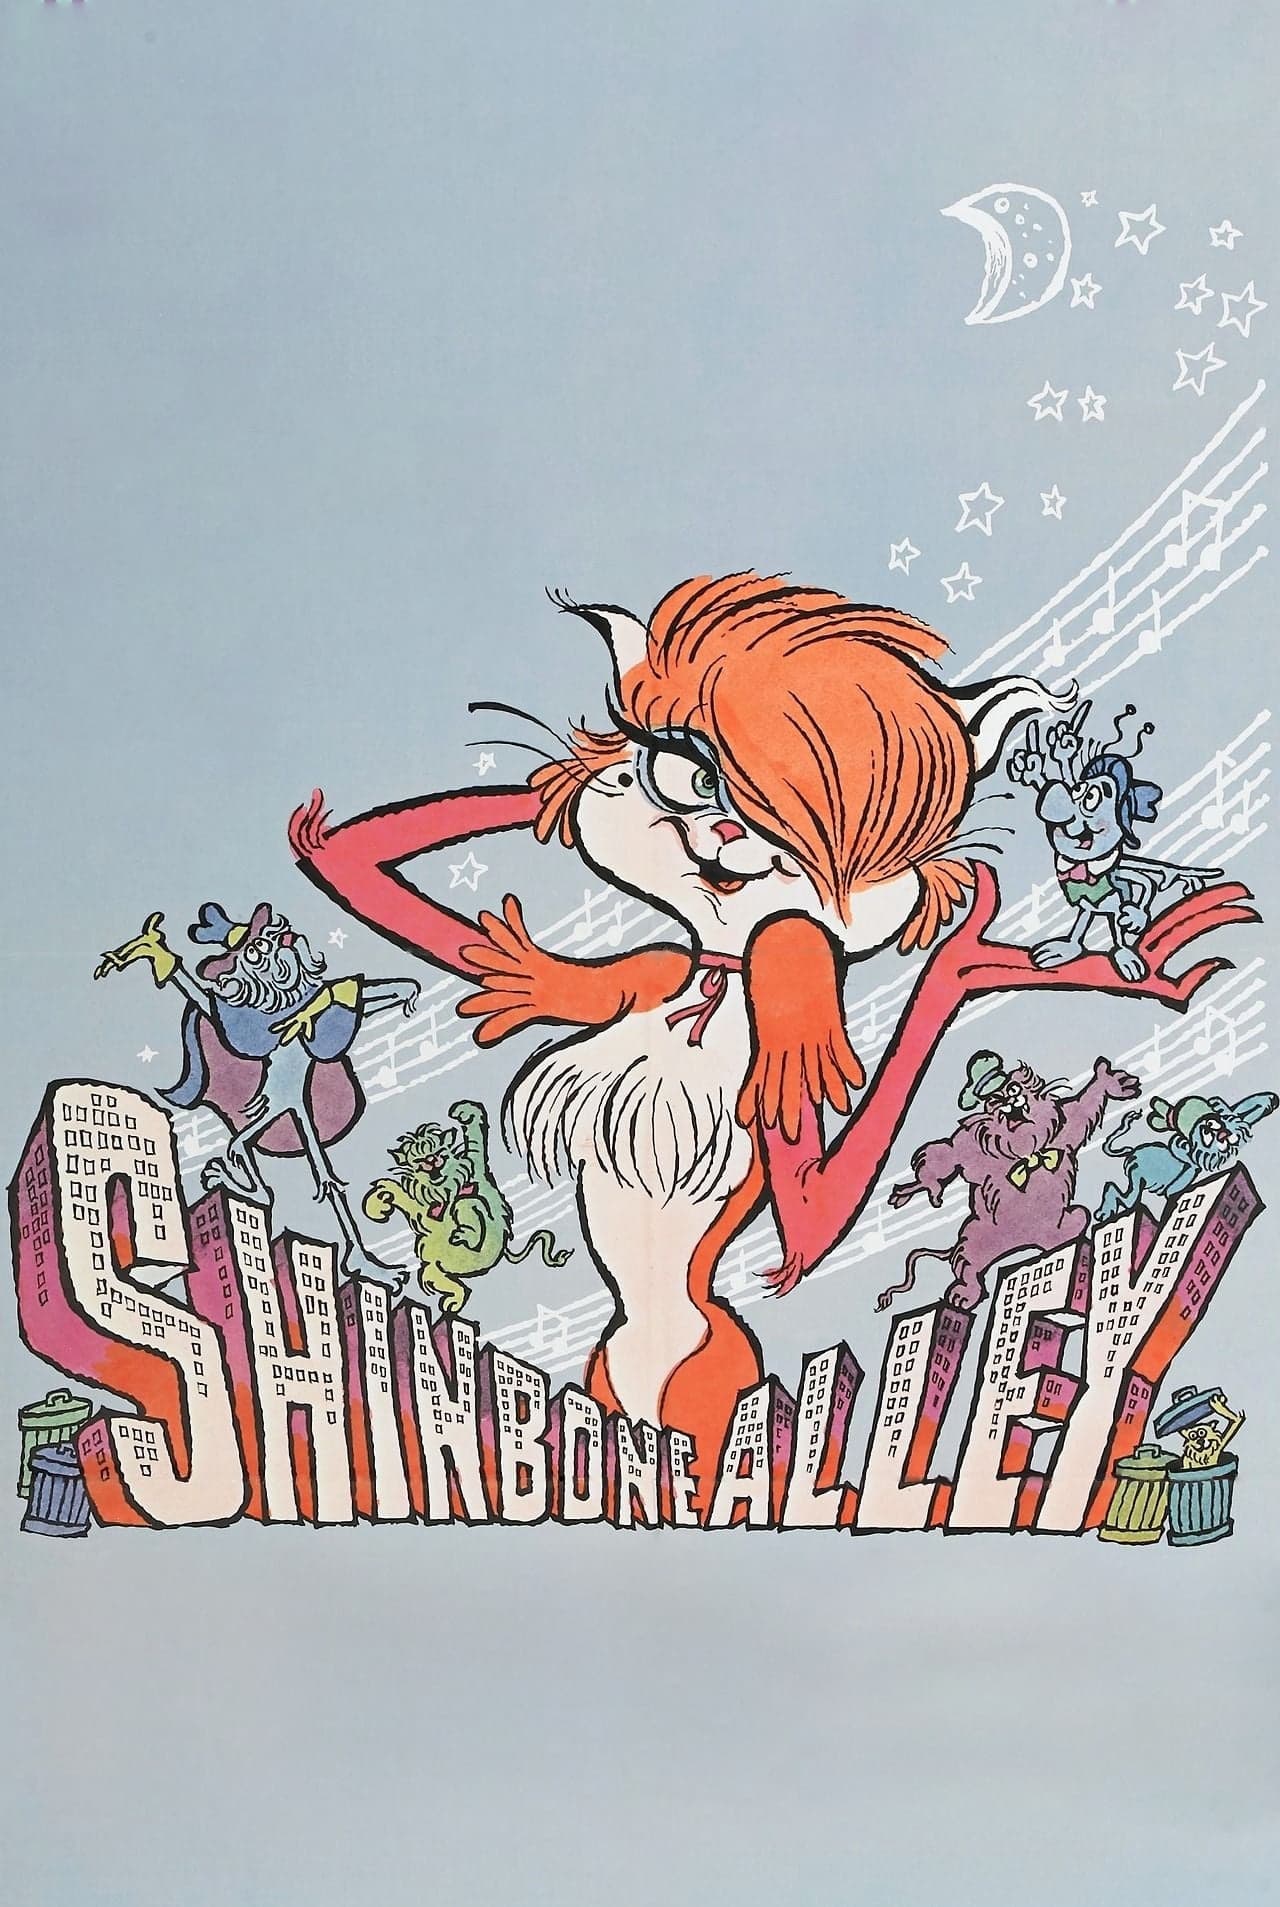 Shinbone Alley (1970)